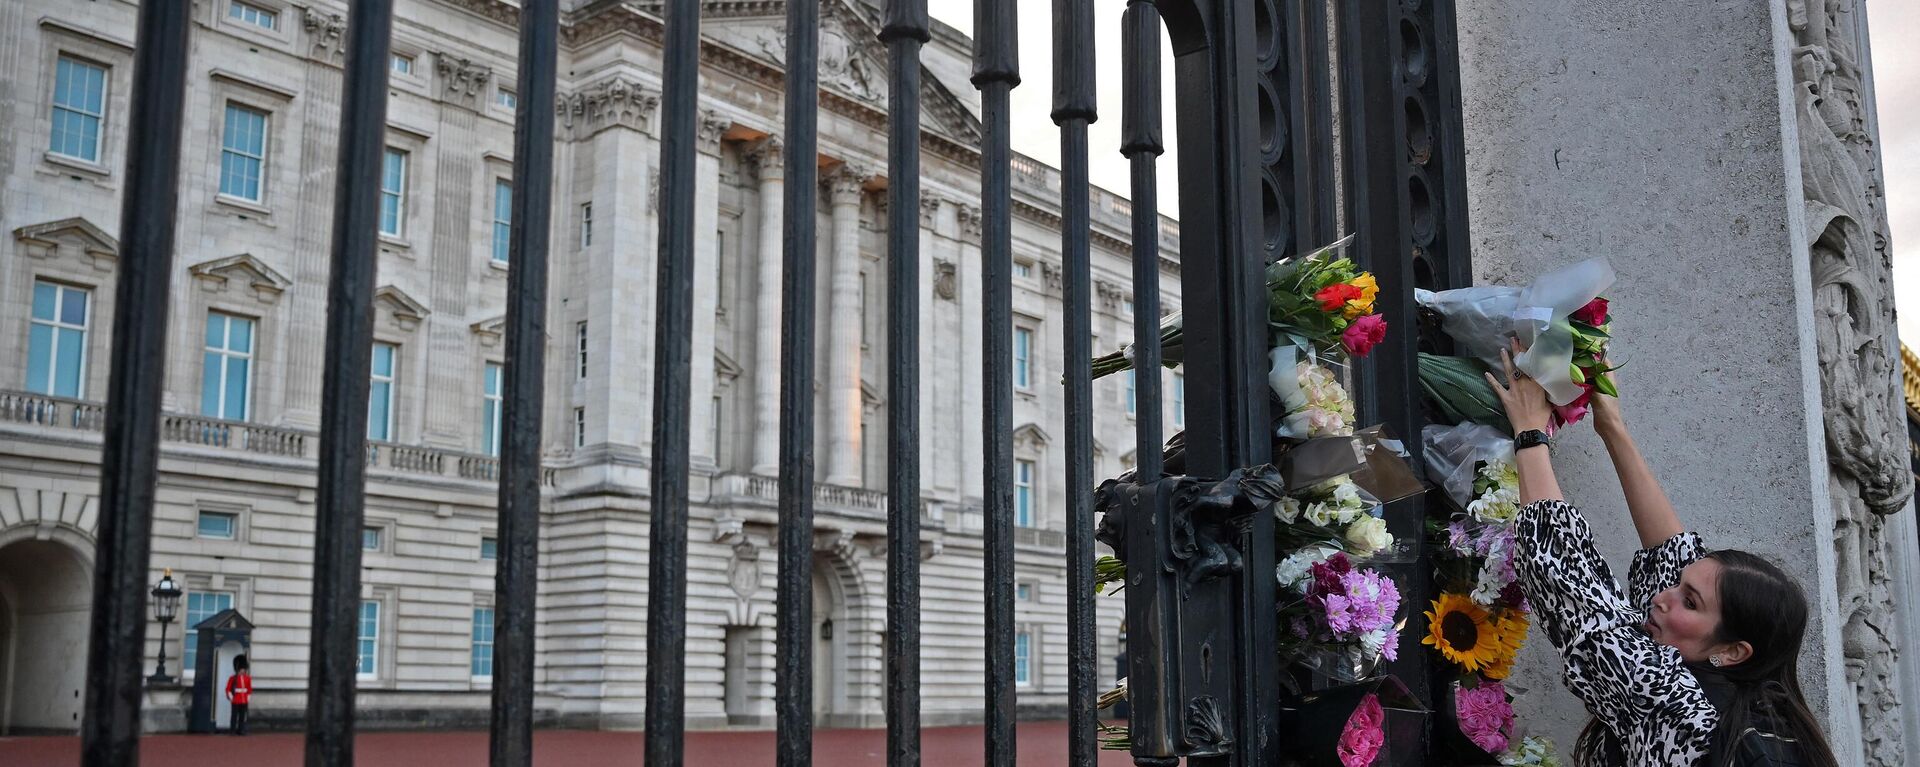 Una mujer deposita unas flores en el exterior del Palacio de Buckingham, en el centro de Londres, tras anunciarse la muerte de la reina Isabel II - Sputnik Mundo, 1920, 08.09.2022